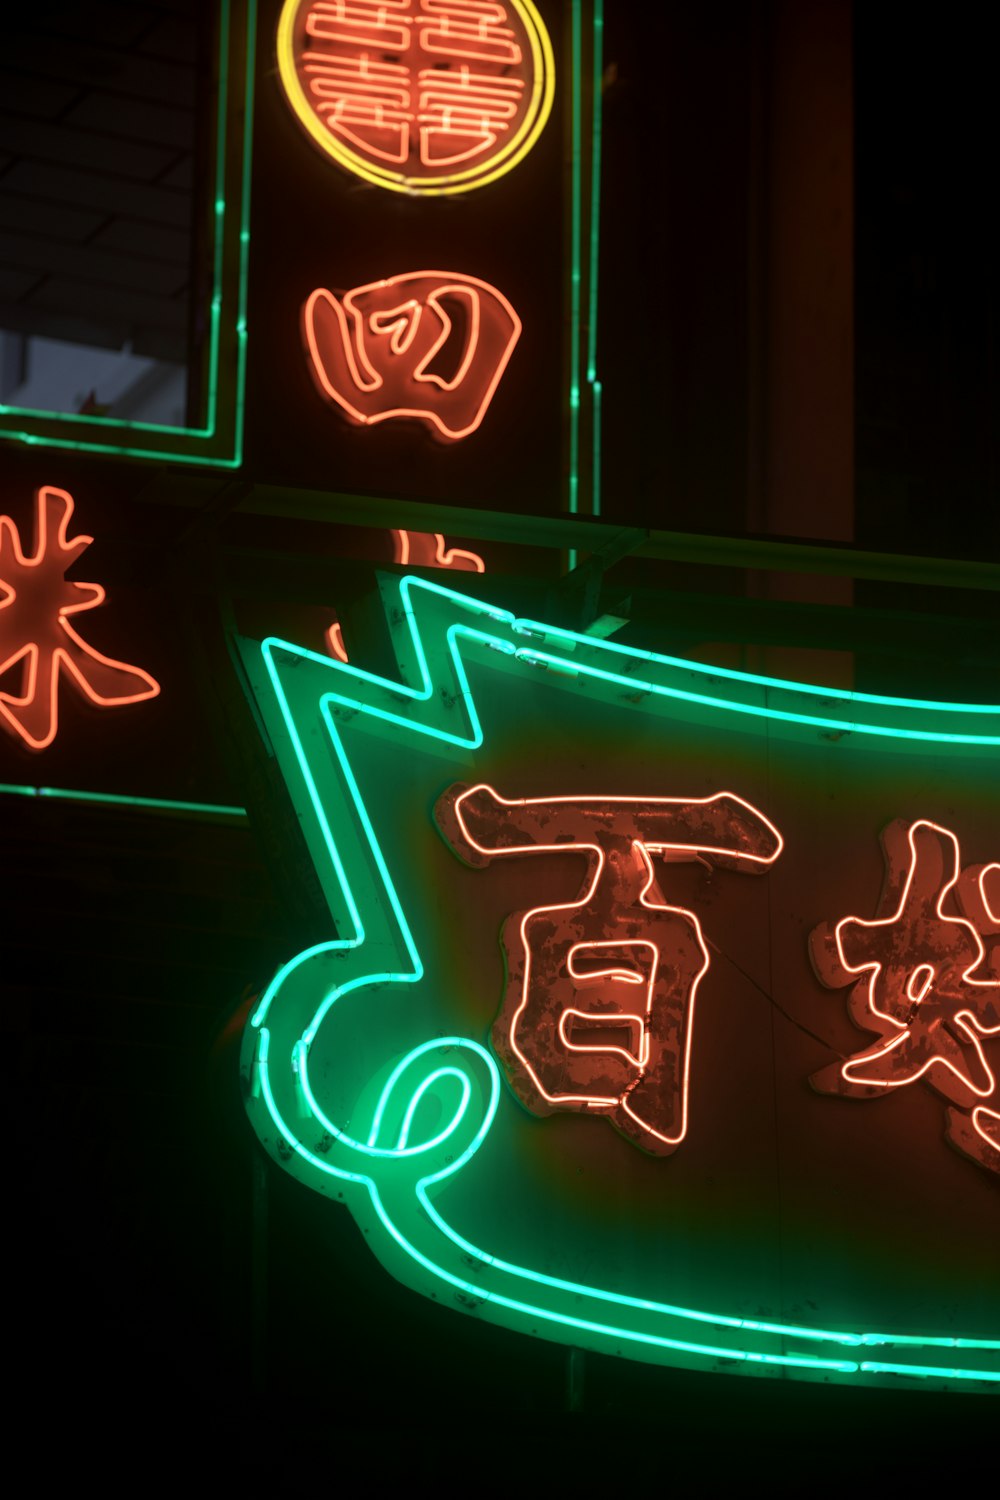 Une enseigne au néon avec une écriture asiatique dessus